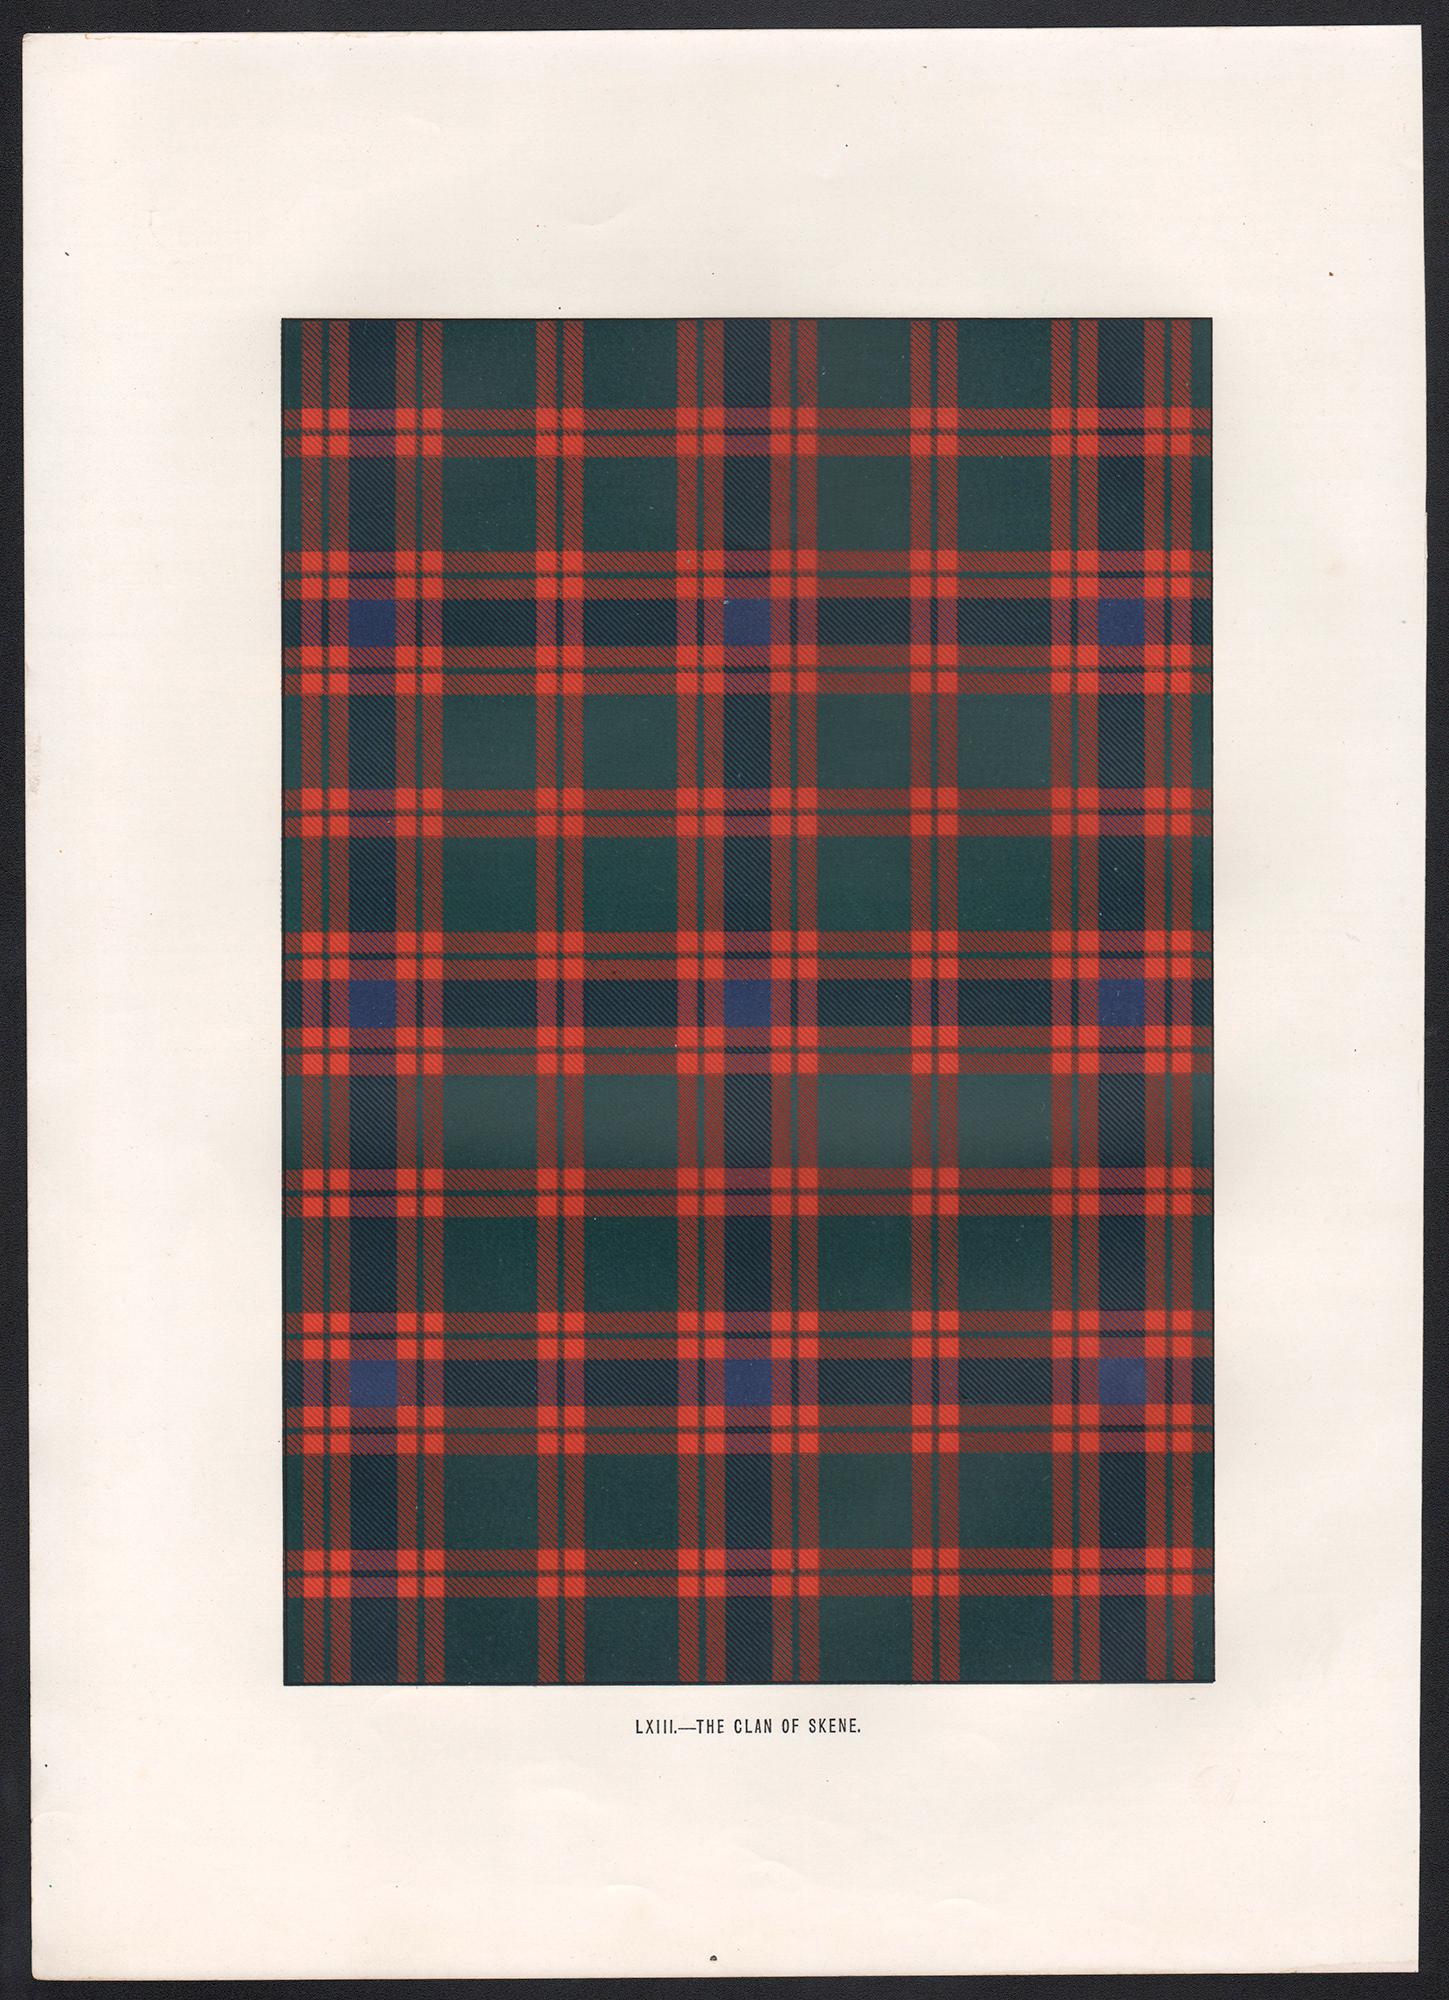 Lithographie du clan de Skene (tartan), Écosse écossaise de conception artistique - Print de Unknown